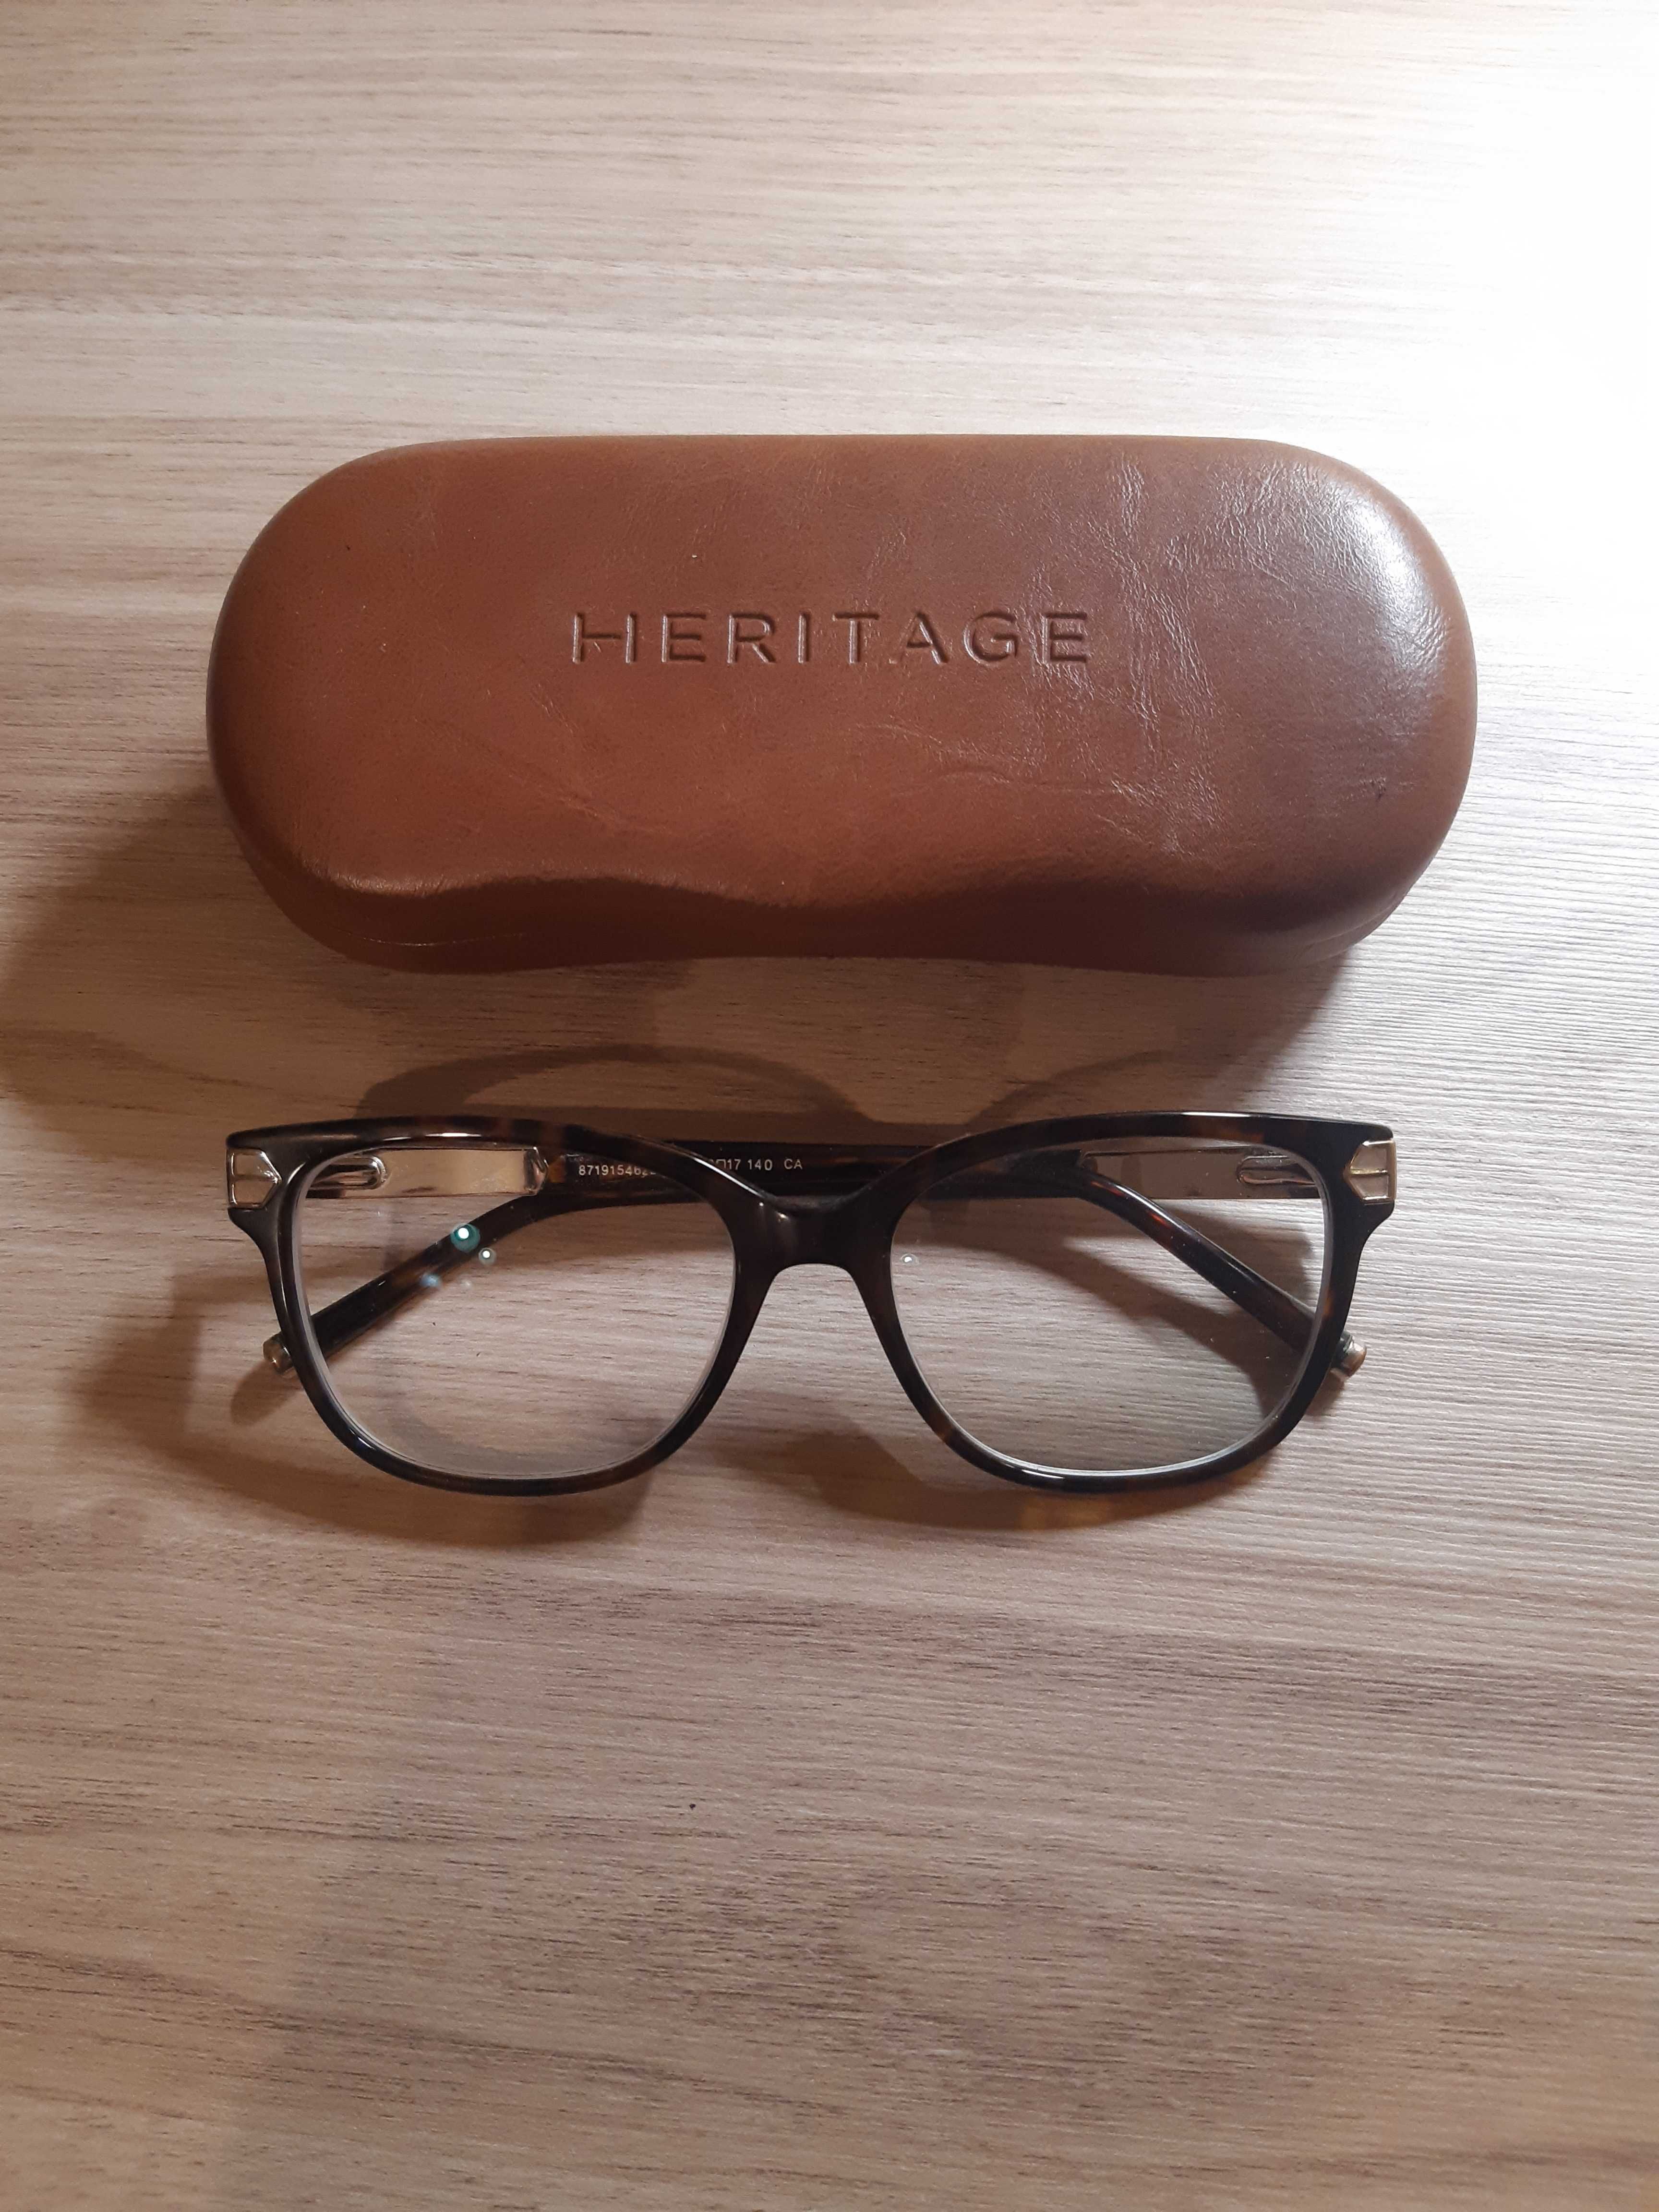 Oprawki okulary HERITAGE Premium Wysoka jakość jak nowe